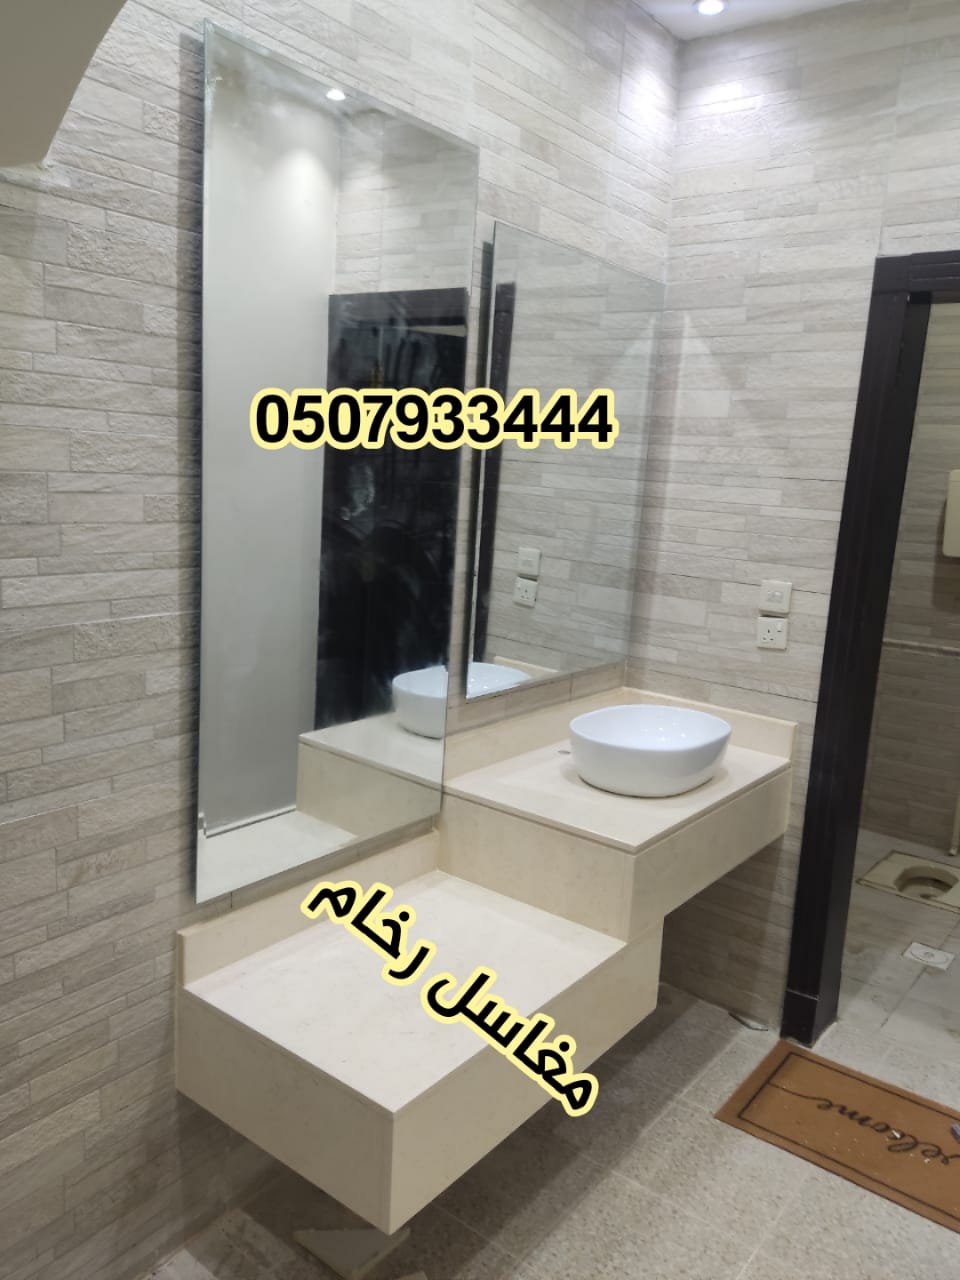 مغاسل رخام ، بناء مغاسل رخام حمامات في الرياض